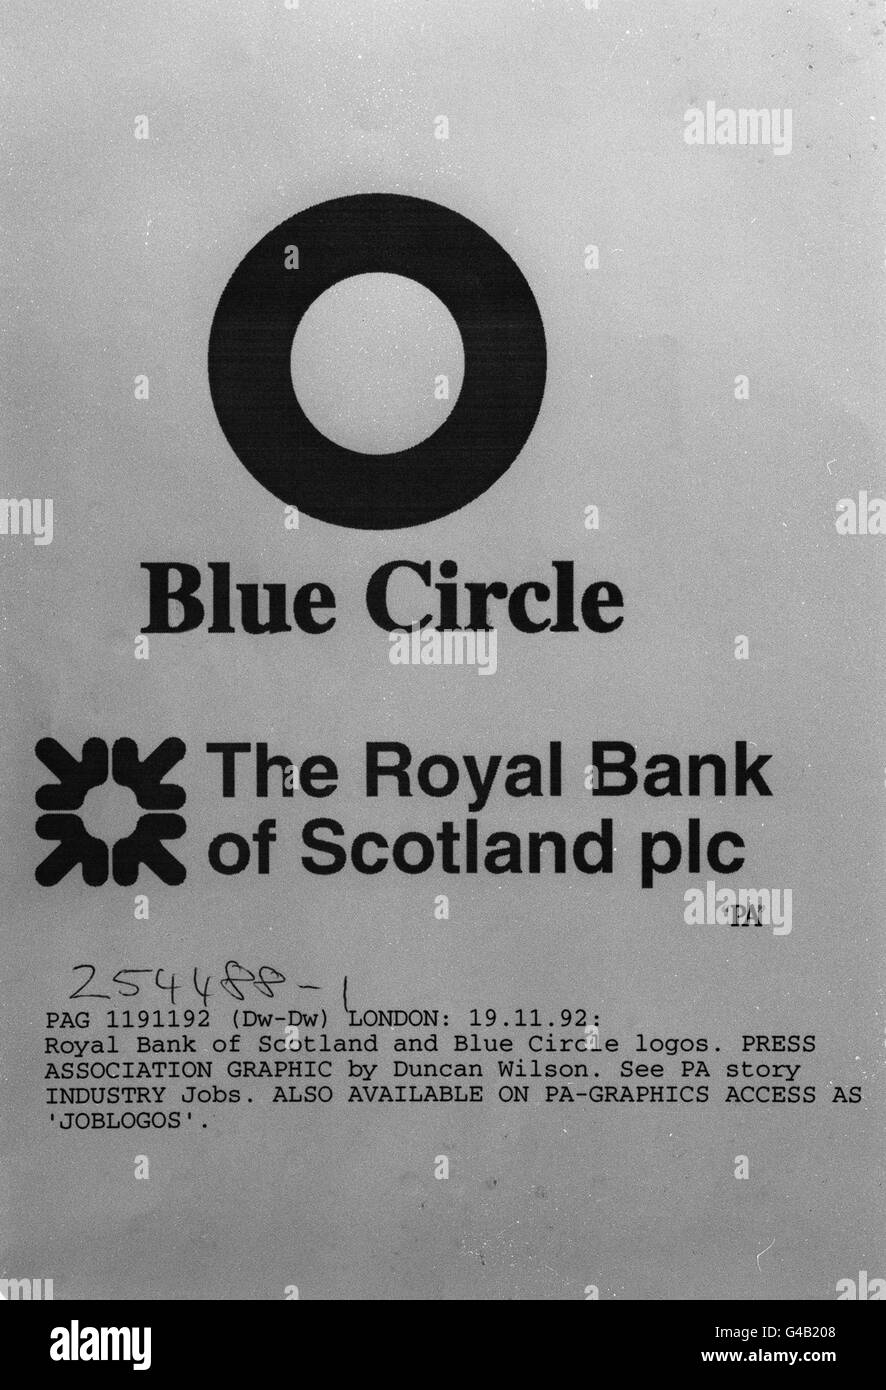 PA NEWS PHOTO 19/11/92 COMPANY LOGOS GRAPHIC OF ROYAL BANK OF SCOTLAND AND BLUE CIRCLE LOGOS Stock Photo